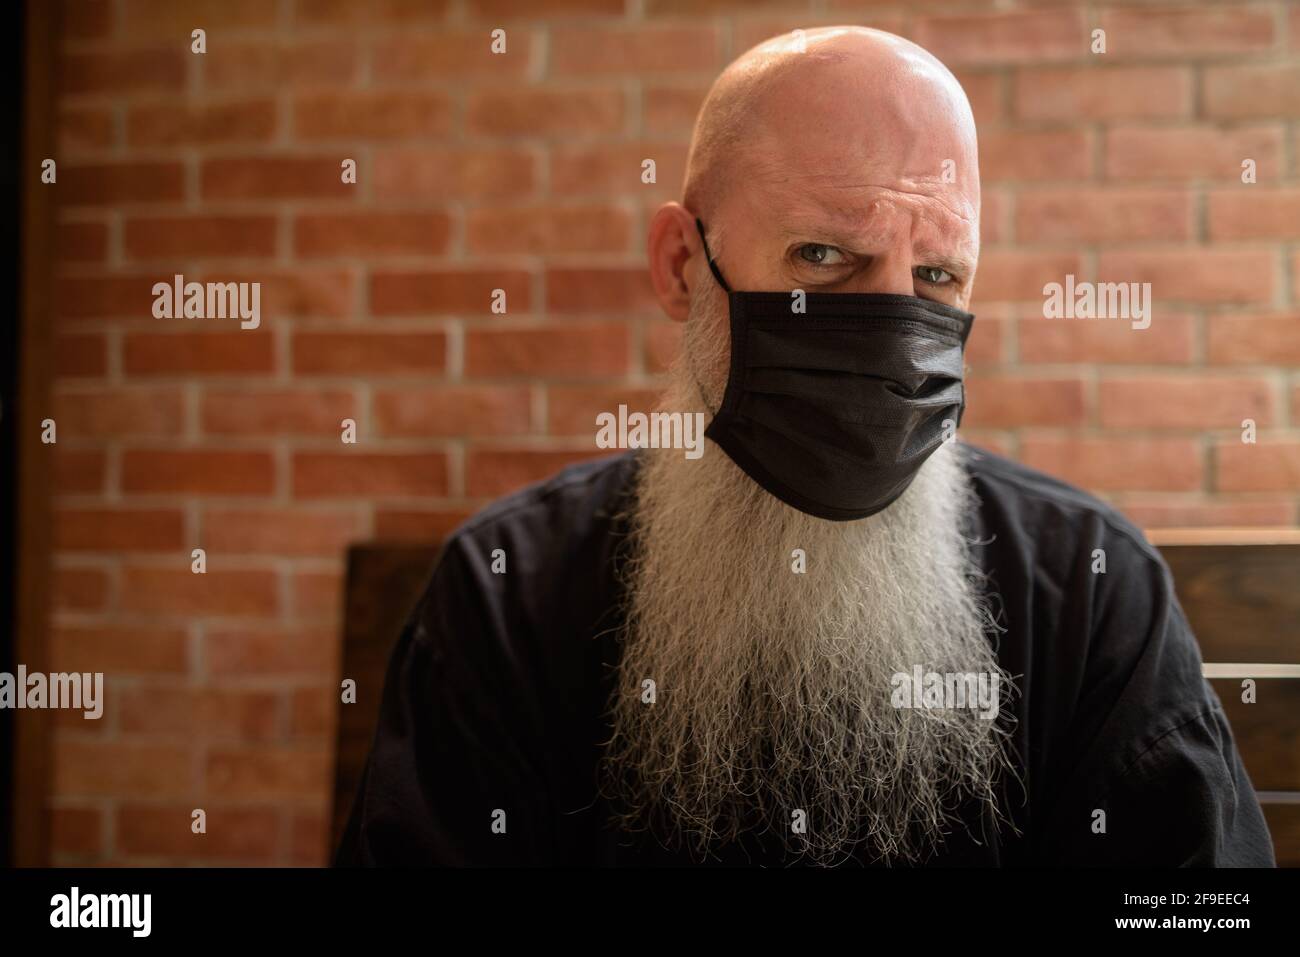 Ernster Mann mit langen grauen Bart trägt Gesichtsmaske zu Vor Coronavirus  Covid 19 schützen Stockfotografie - Alamy